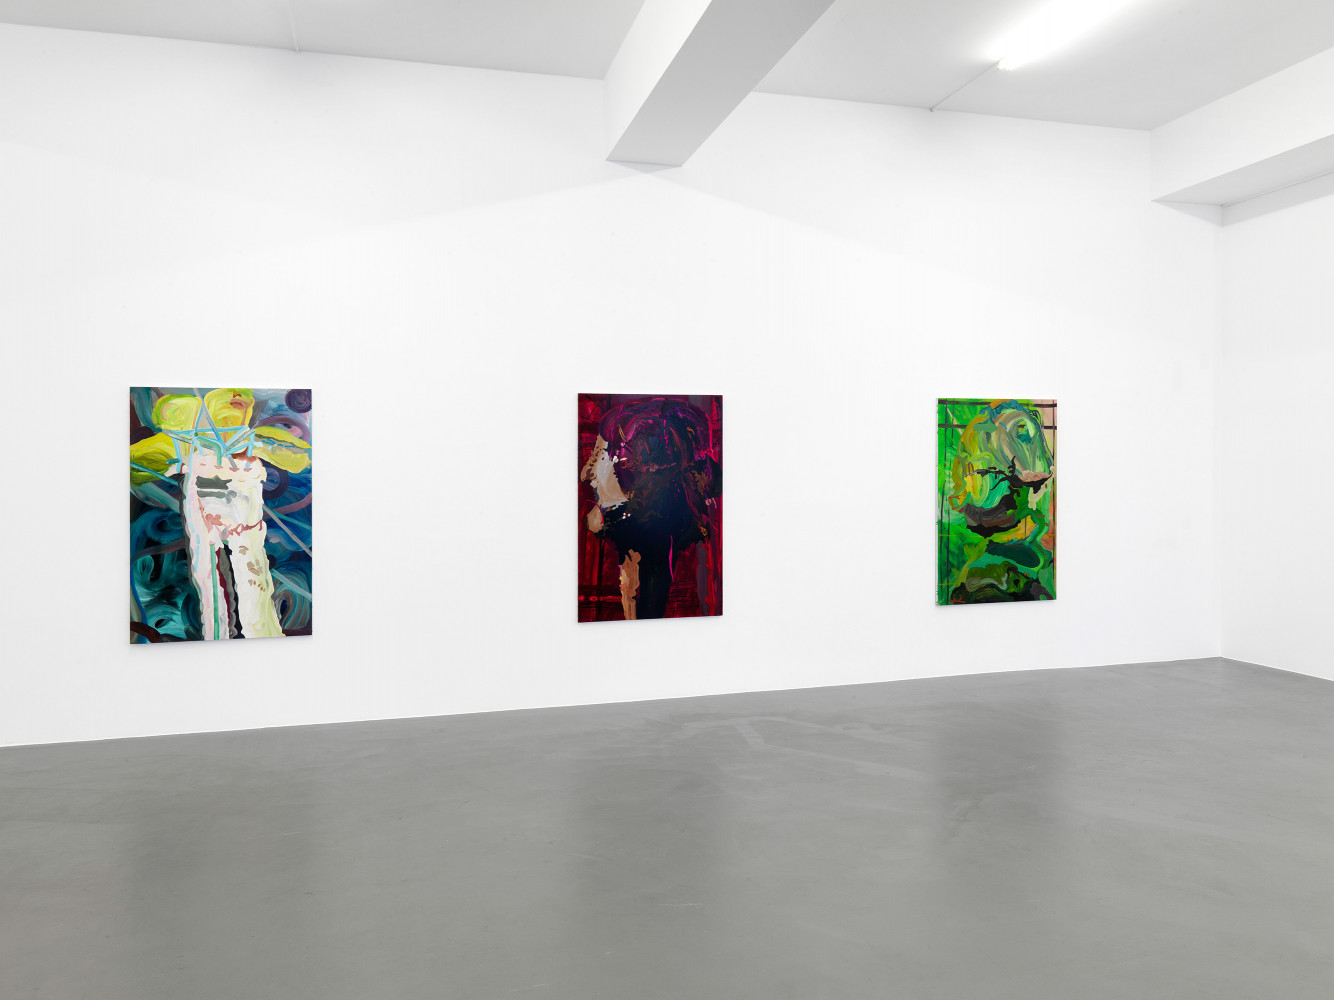 Clare Woods, ‘The Dark Matter’, Installation view, Buchmann Galerie, 2012